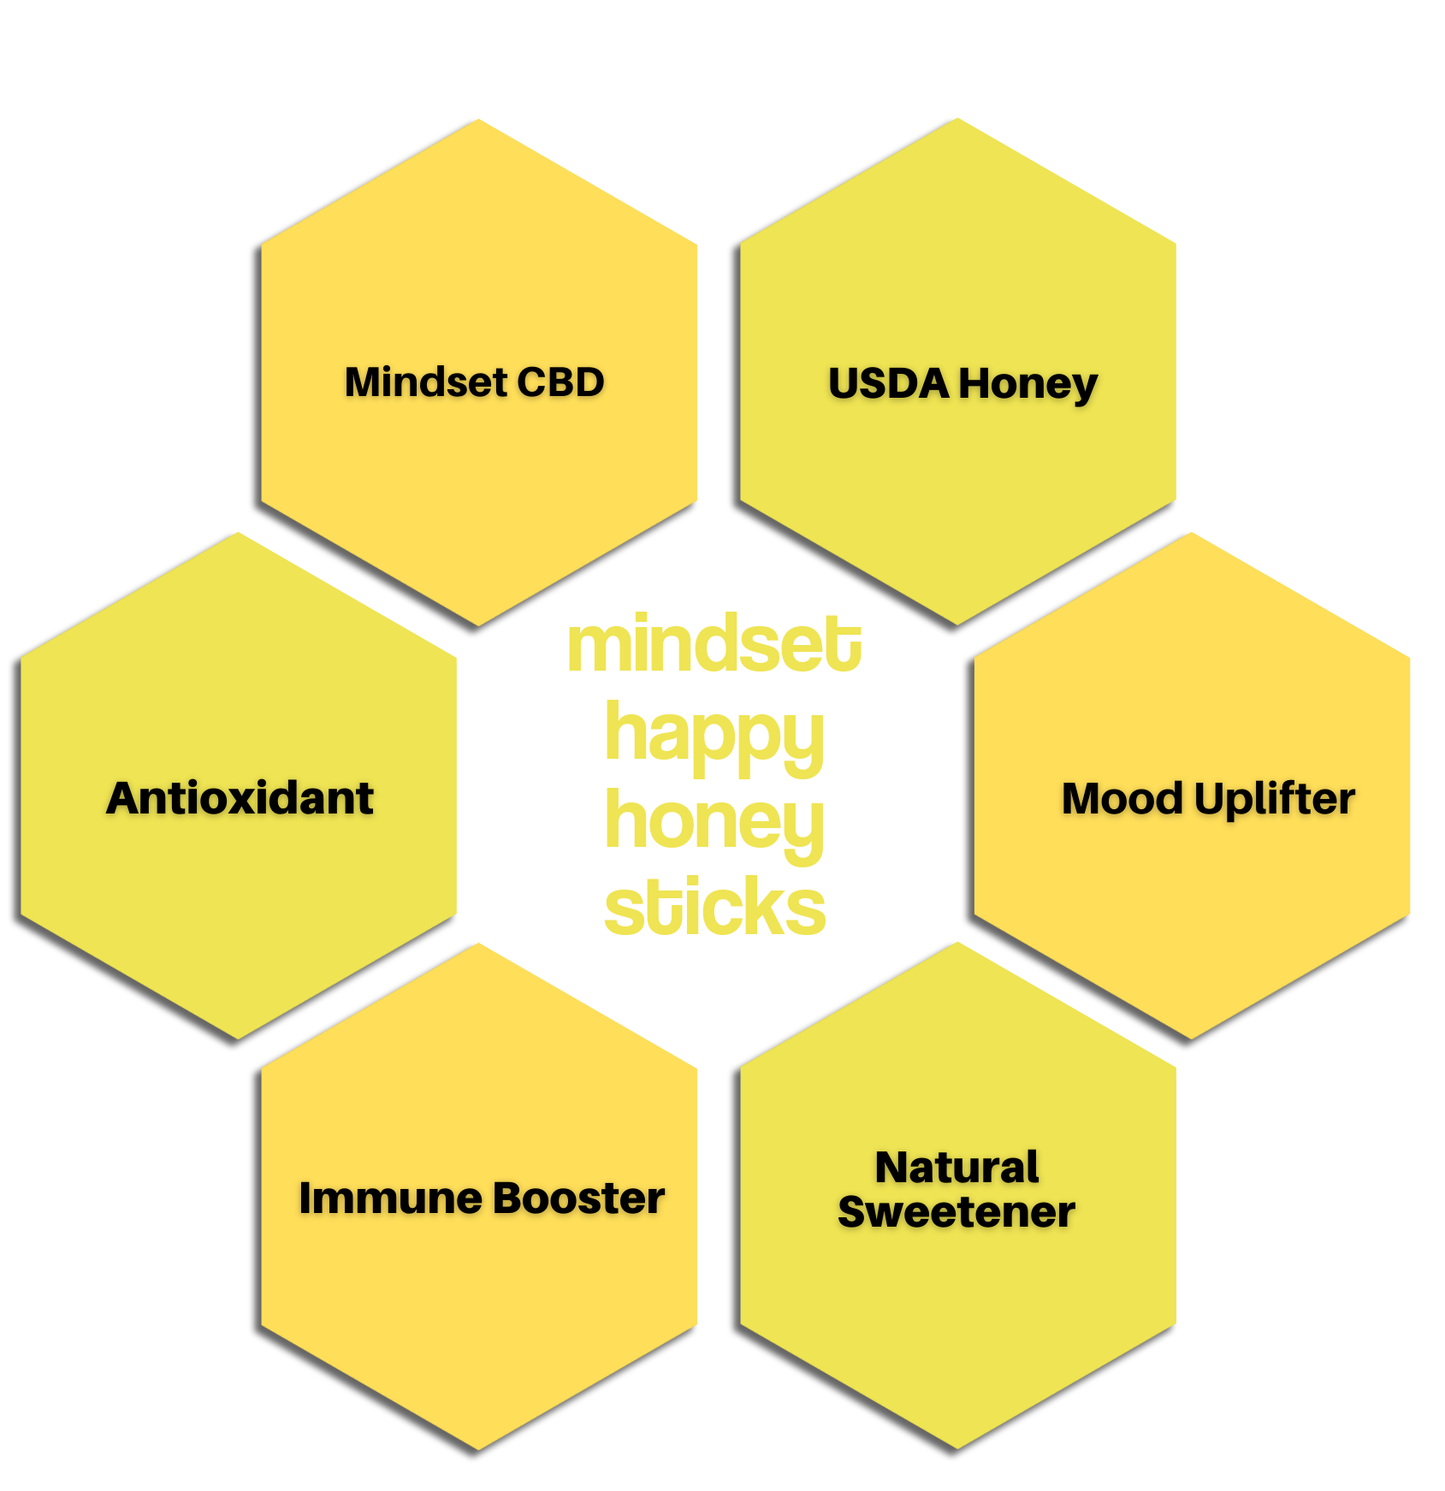 Mindset Happy CBD Honey Sticks